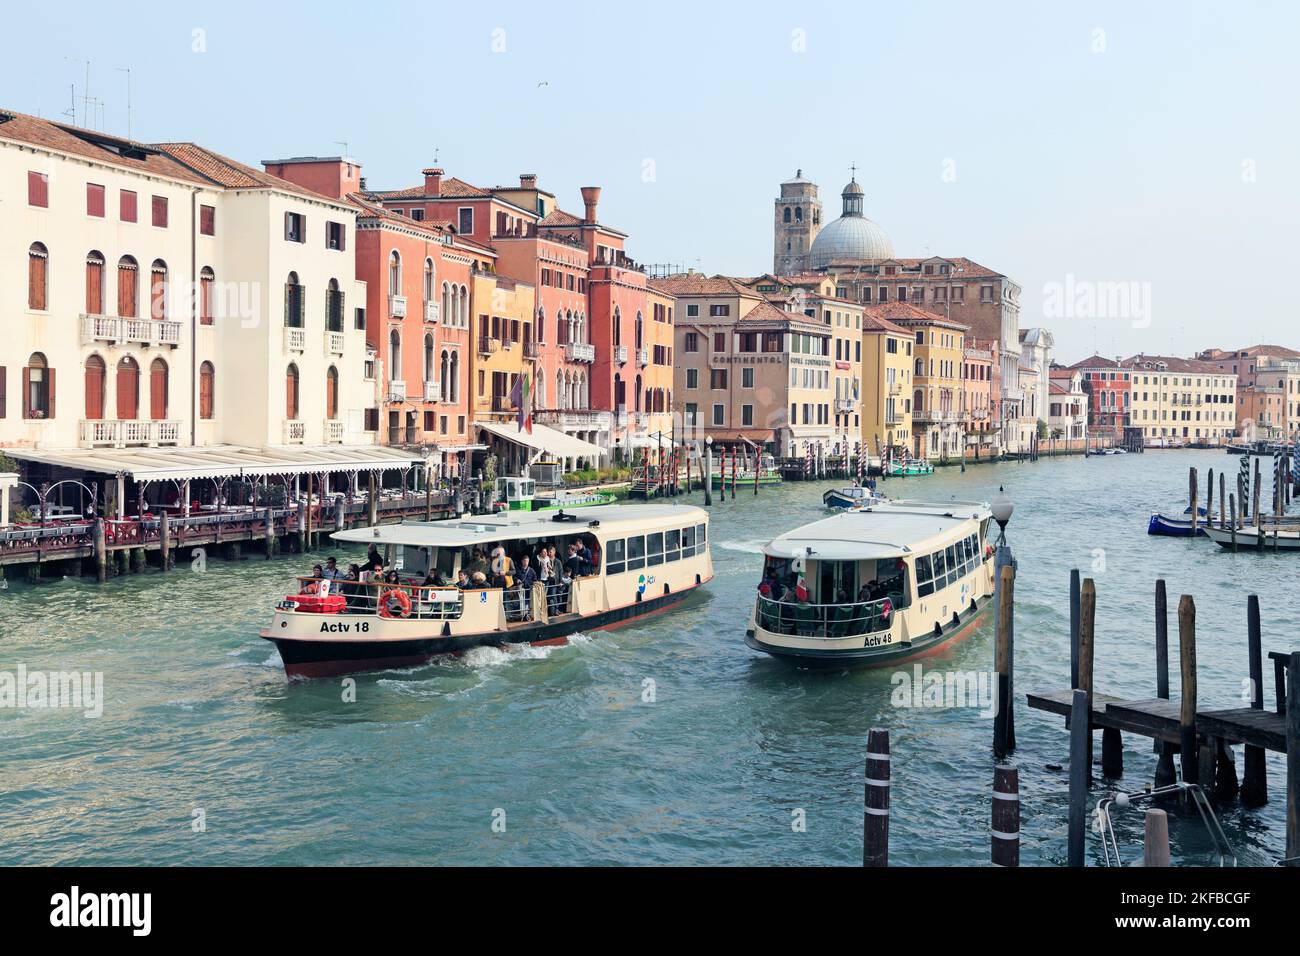 Venedig, Italien. Fähren auf Canale Grande, Grand Canal, transportieren Menschen. Stockfoto